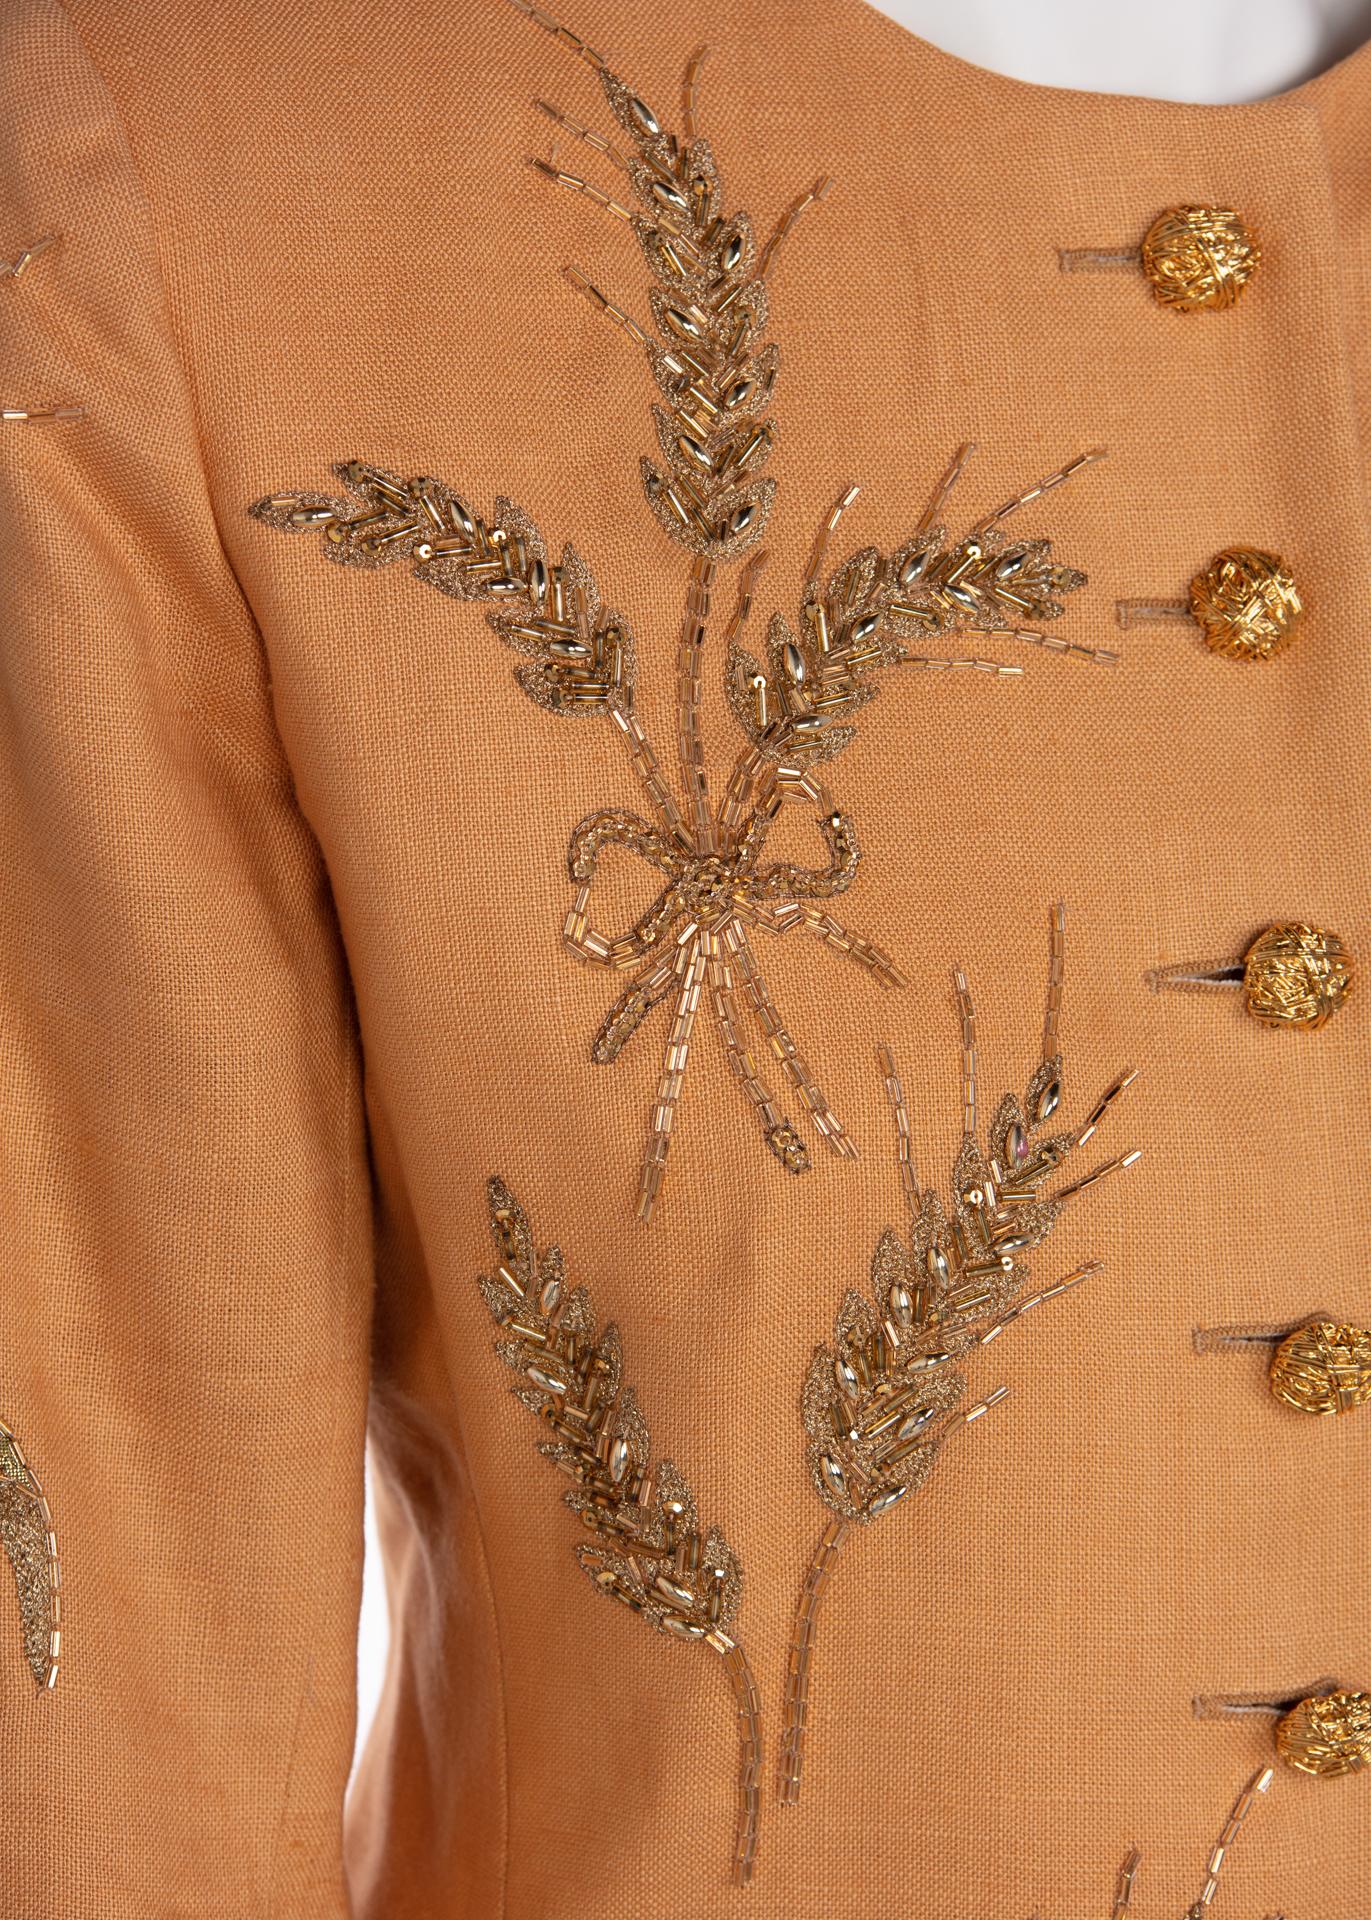 Women's Yves Saint Laurent Gold Beaded Wheat Linen Jacket, 1980s 